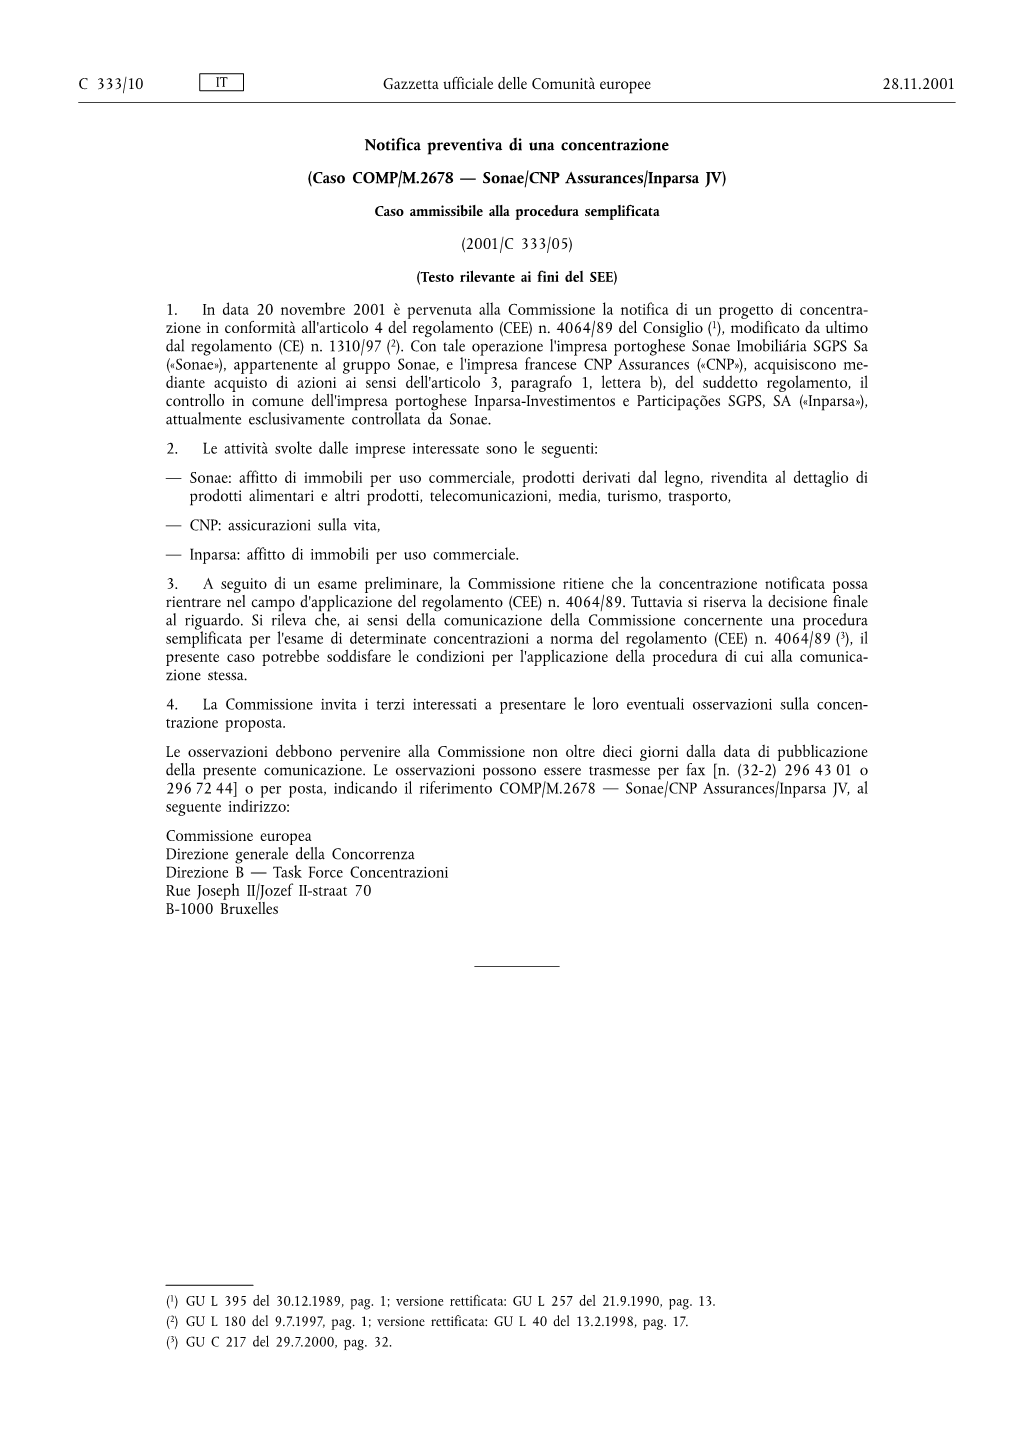 Gazzetta Ufficiale C 333, 28/11/2001, Pag. 10